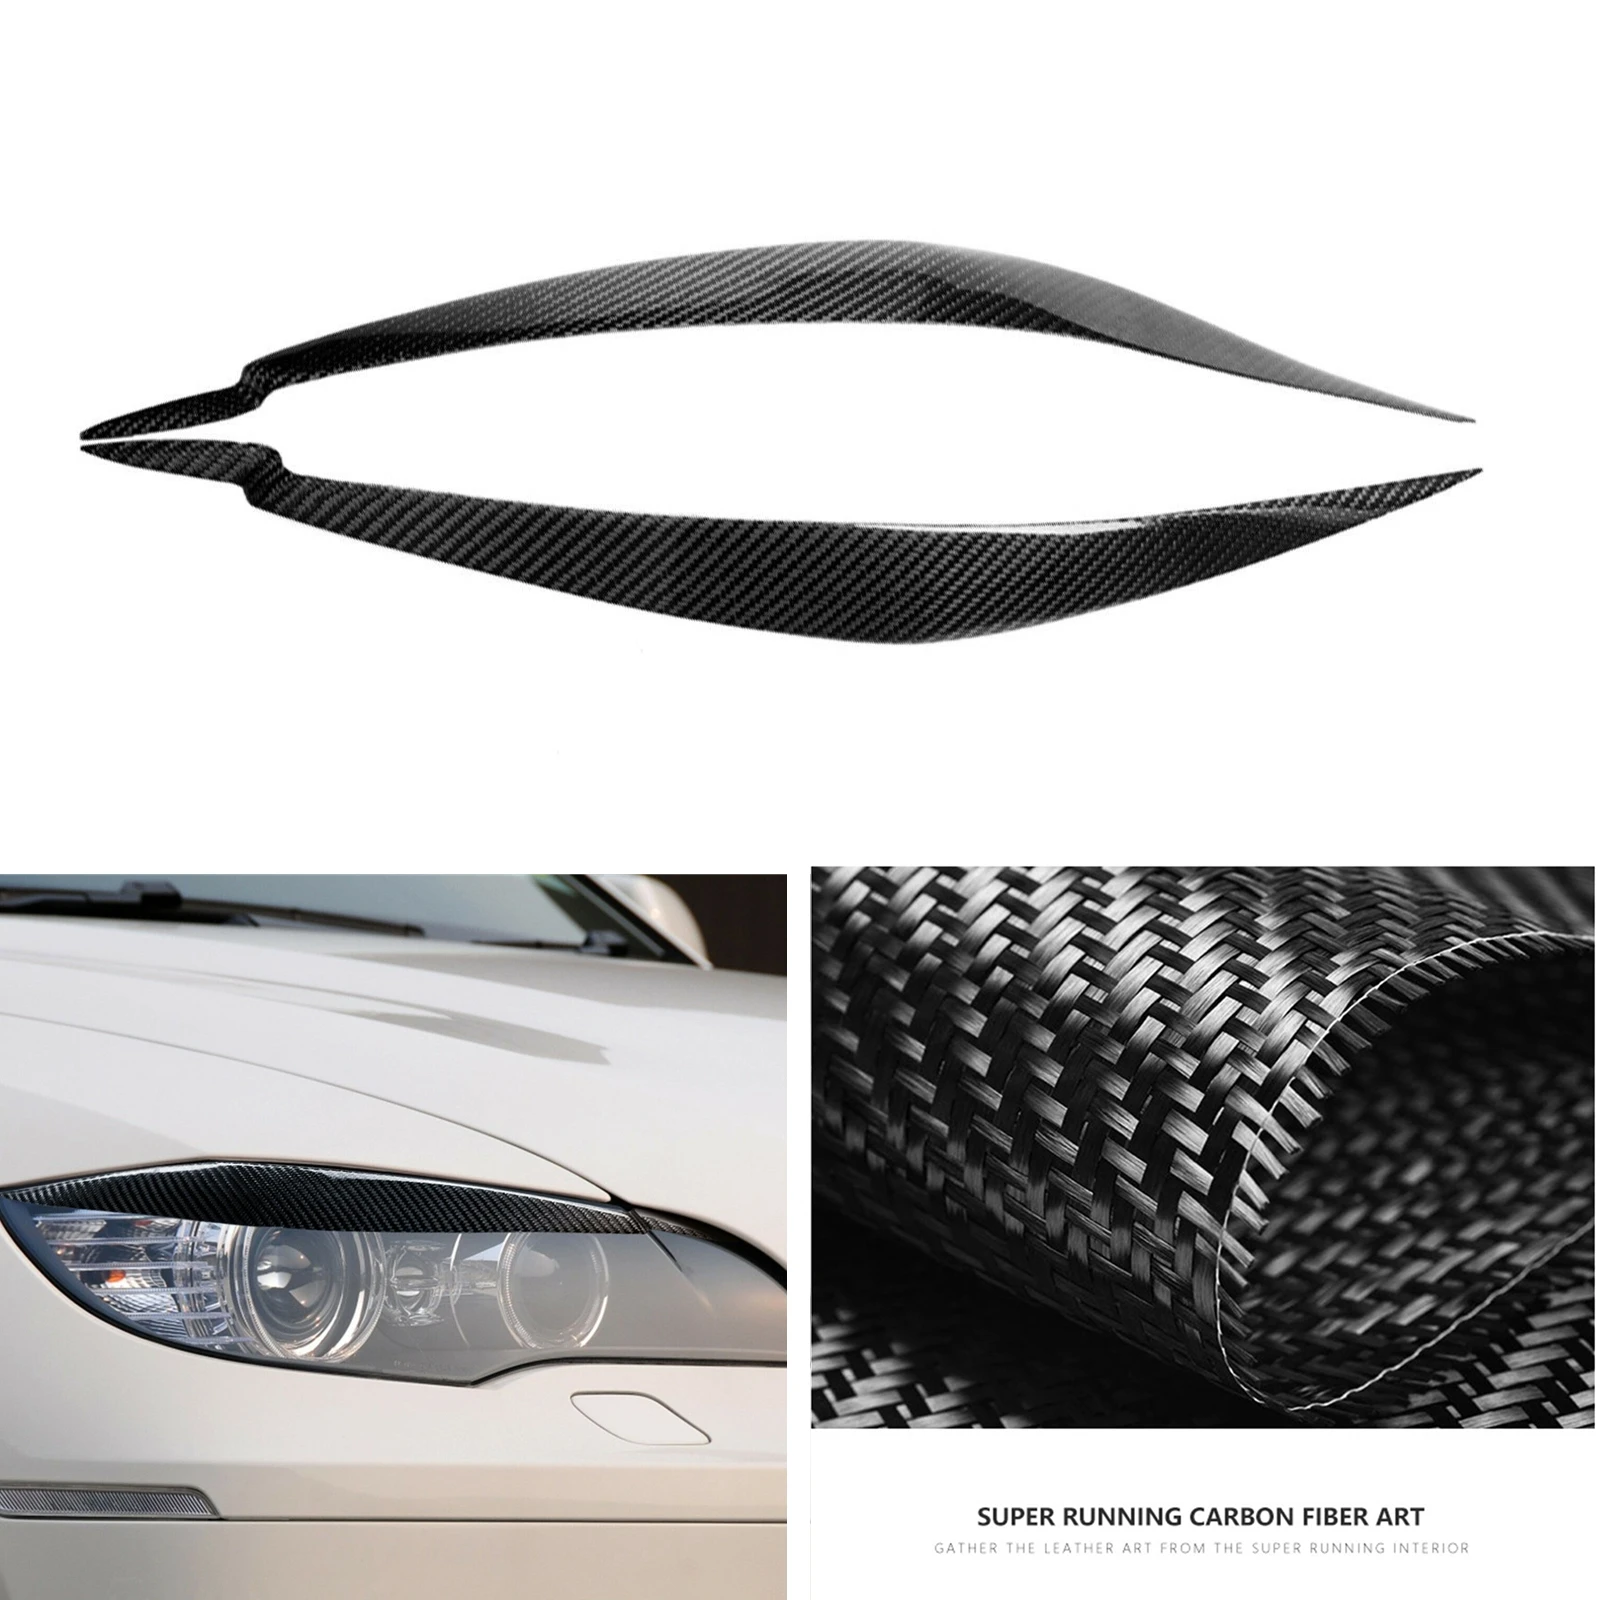 

Передняя головка для BMW X6 X6M E71 2008- 2014, настоящая углеродная волоконная фара, веко, налобный фонарь, налобный фонарь, лампа